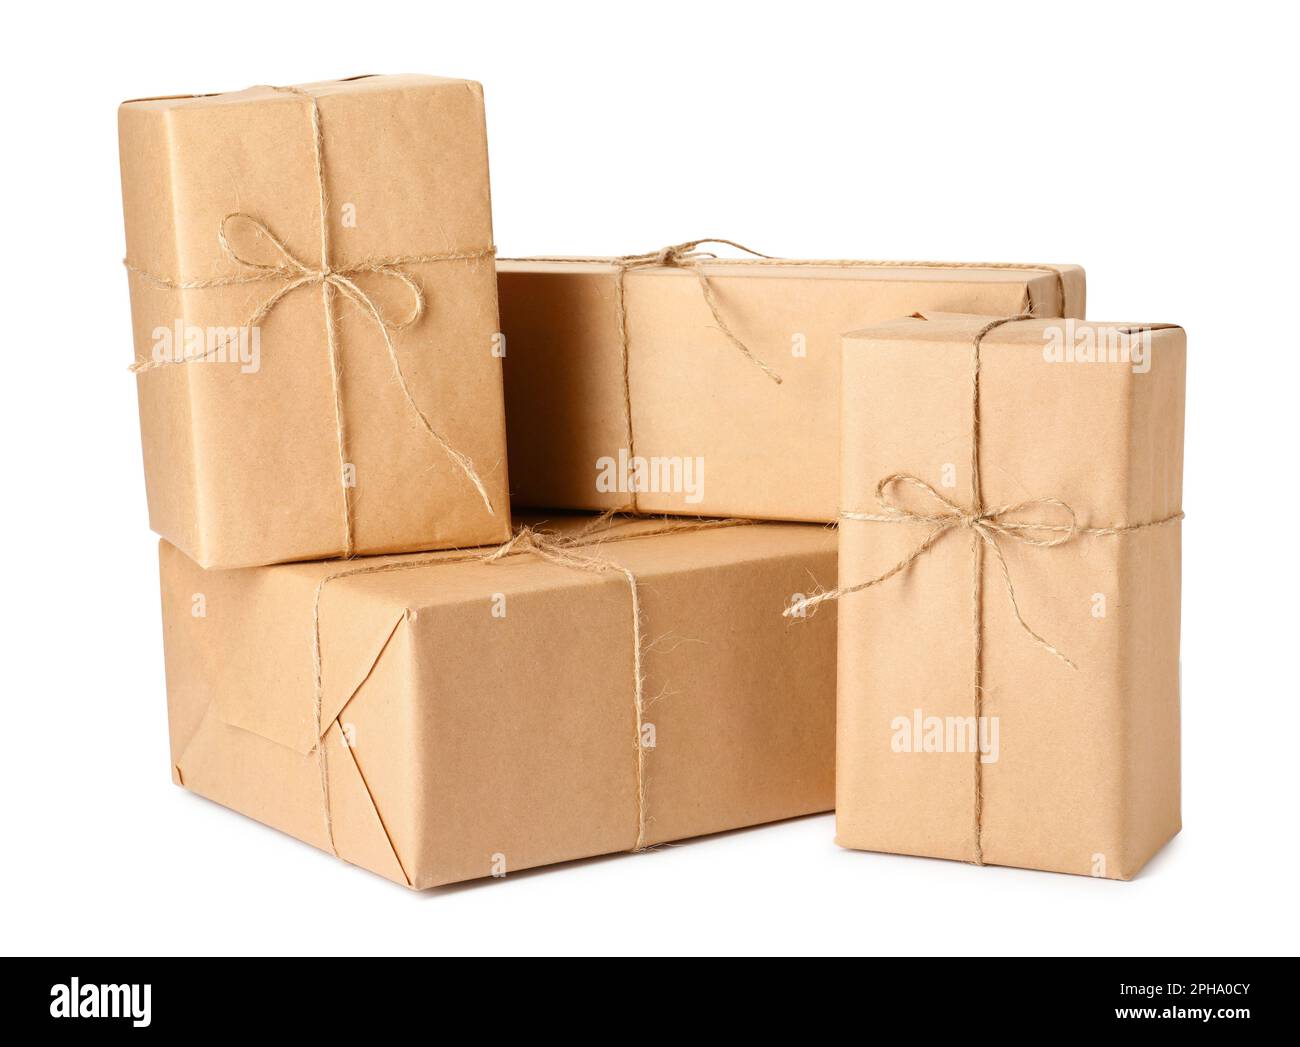 Emballage Cadeau De Papier Kraft Enroulé Avec De La Ficelle, Le